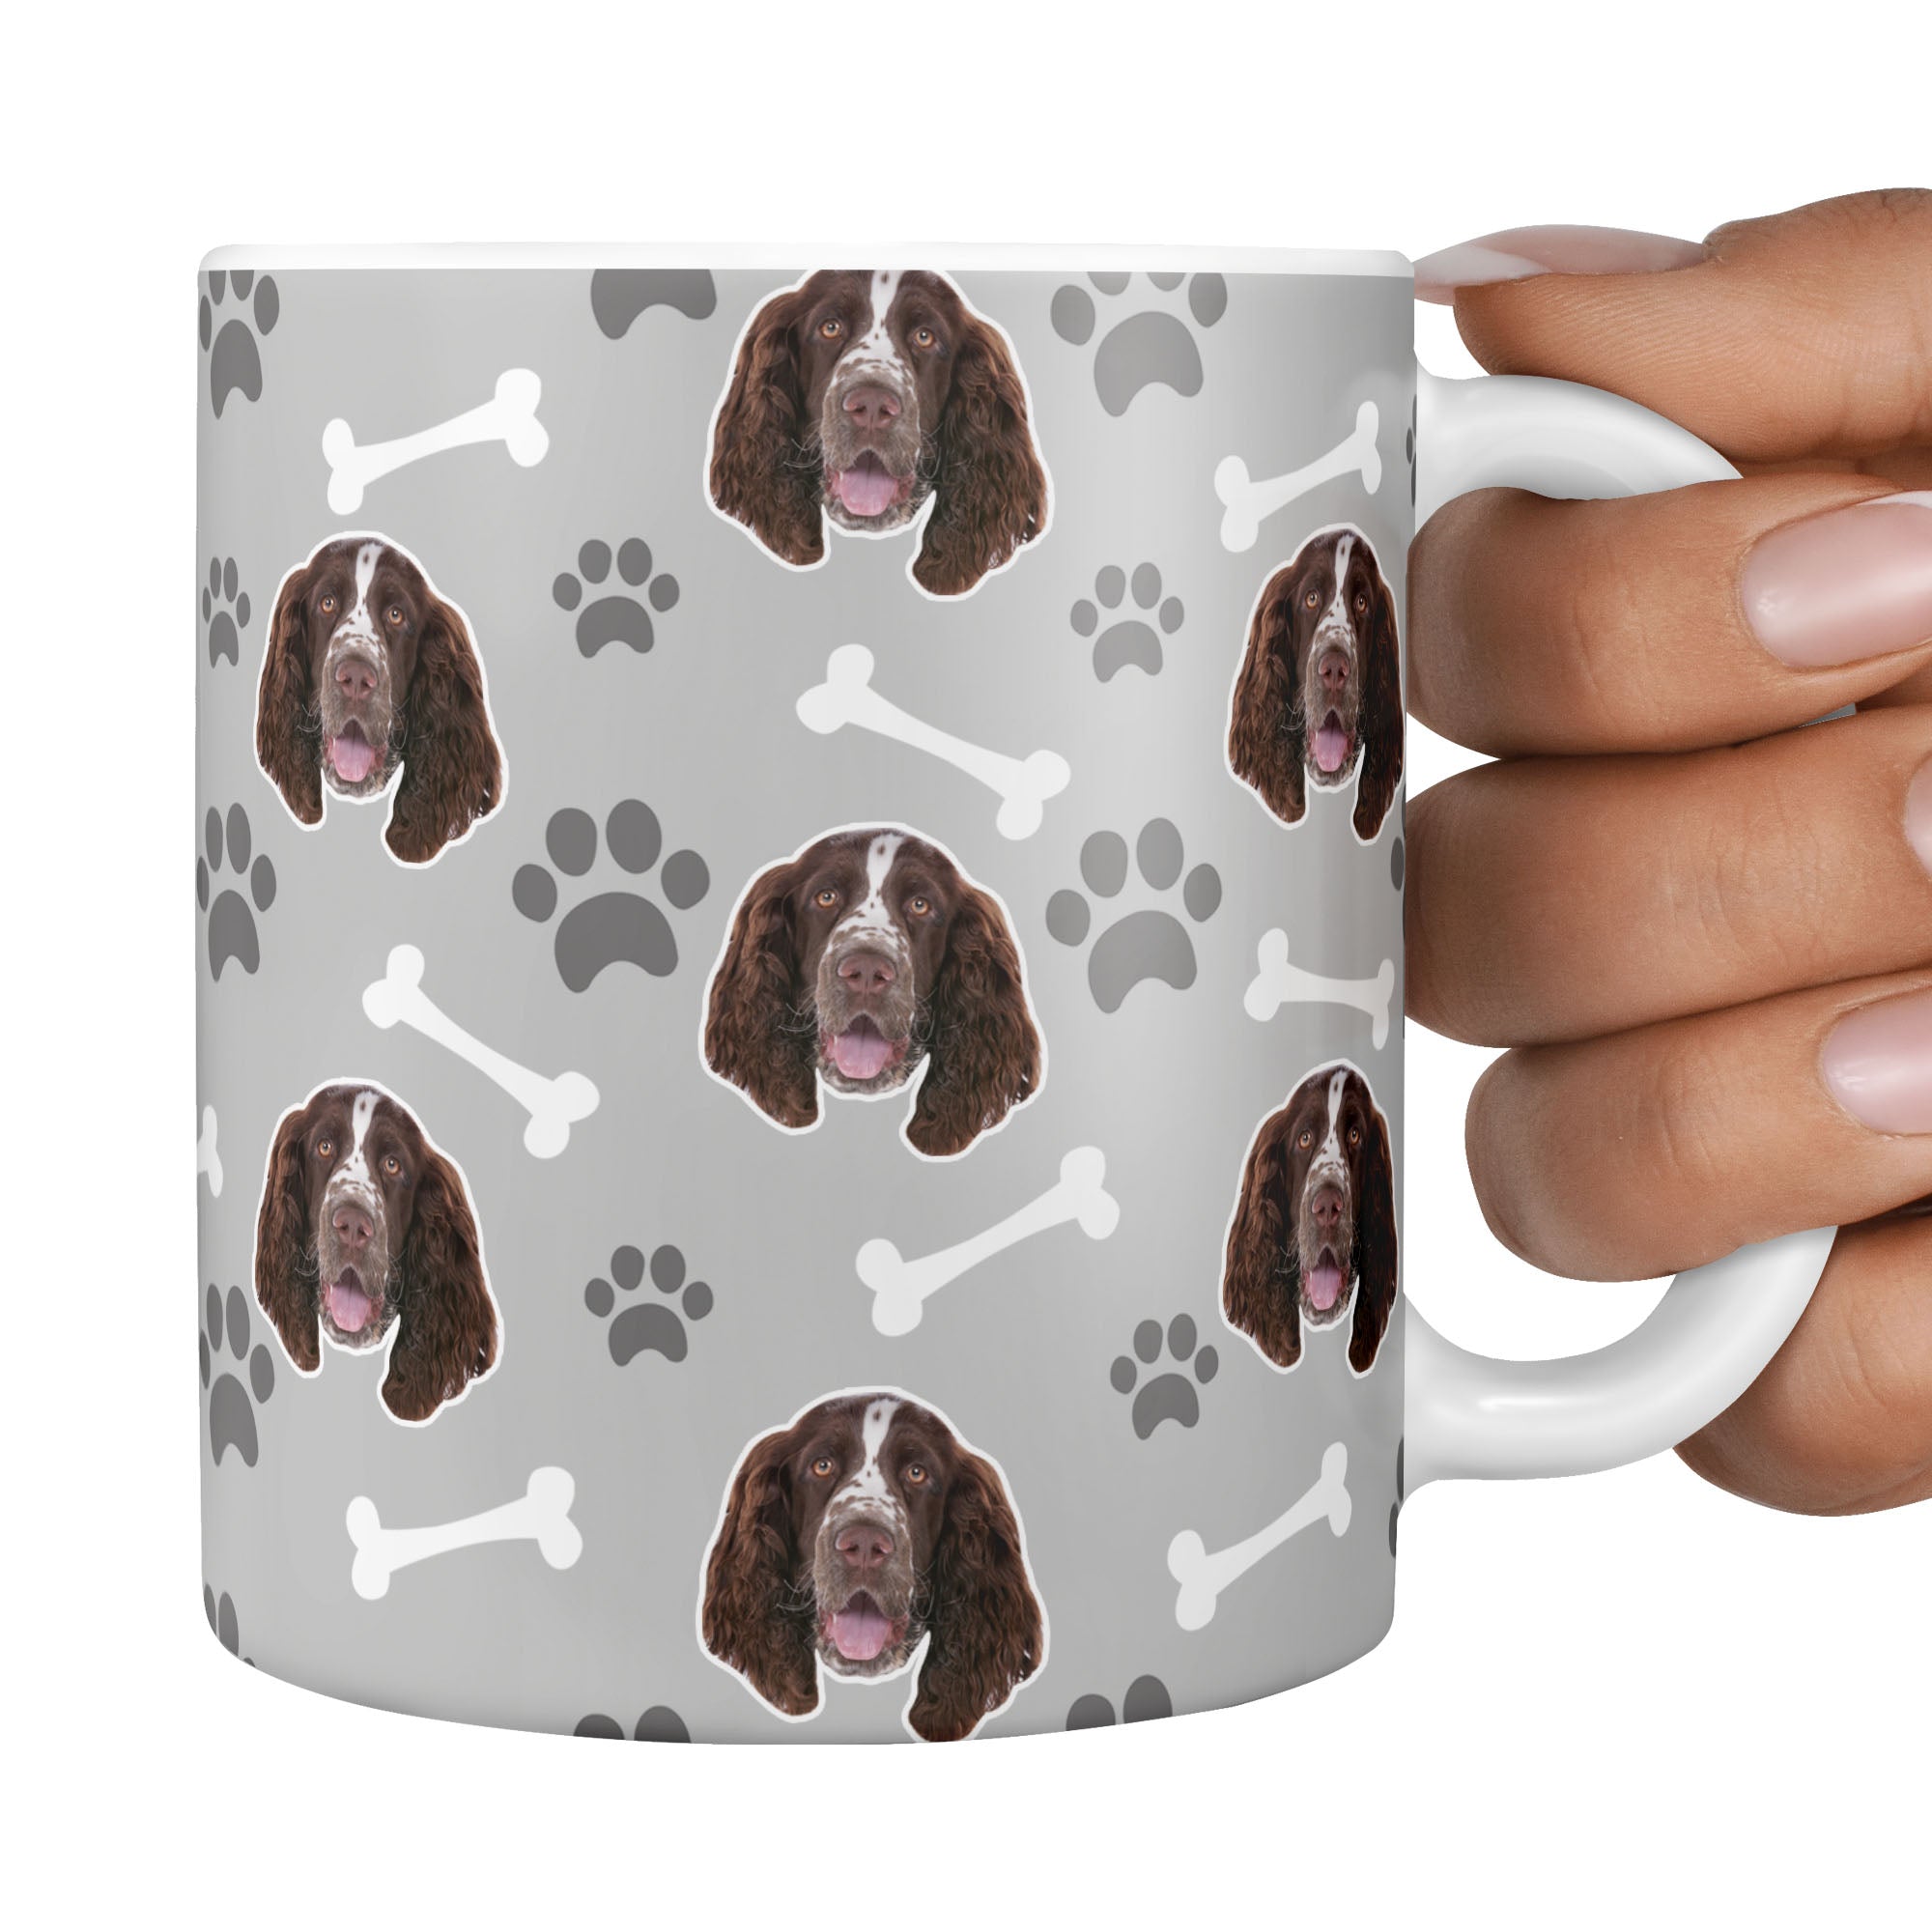 personalised dog mug